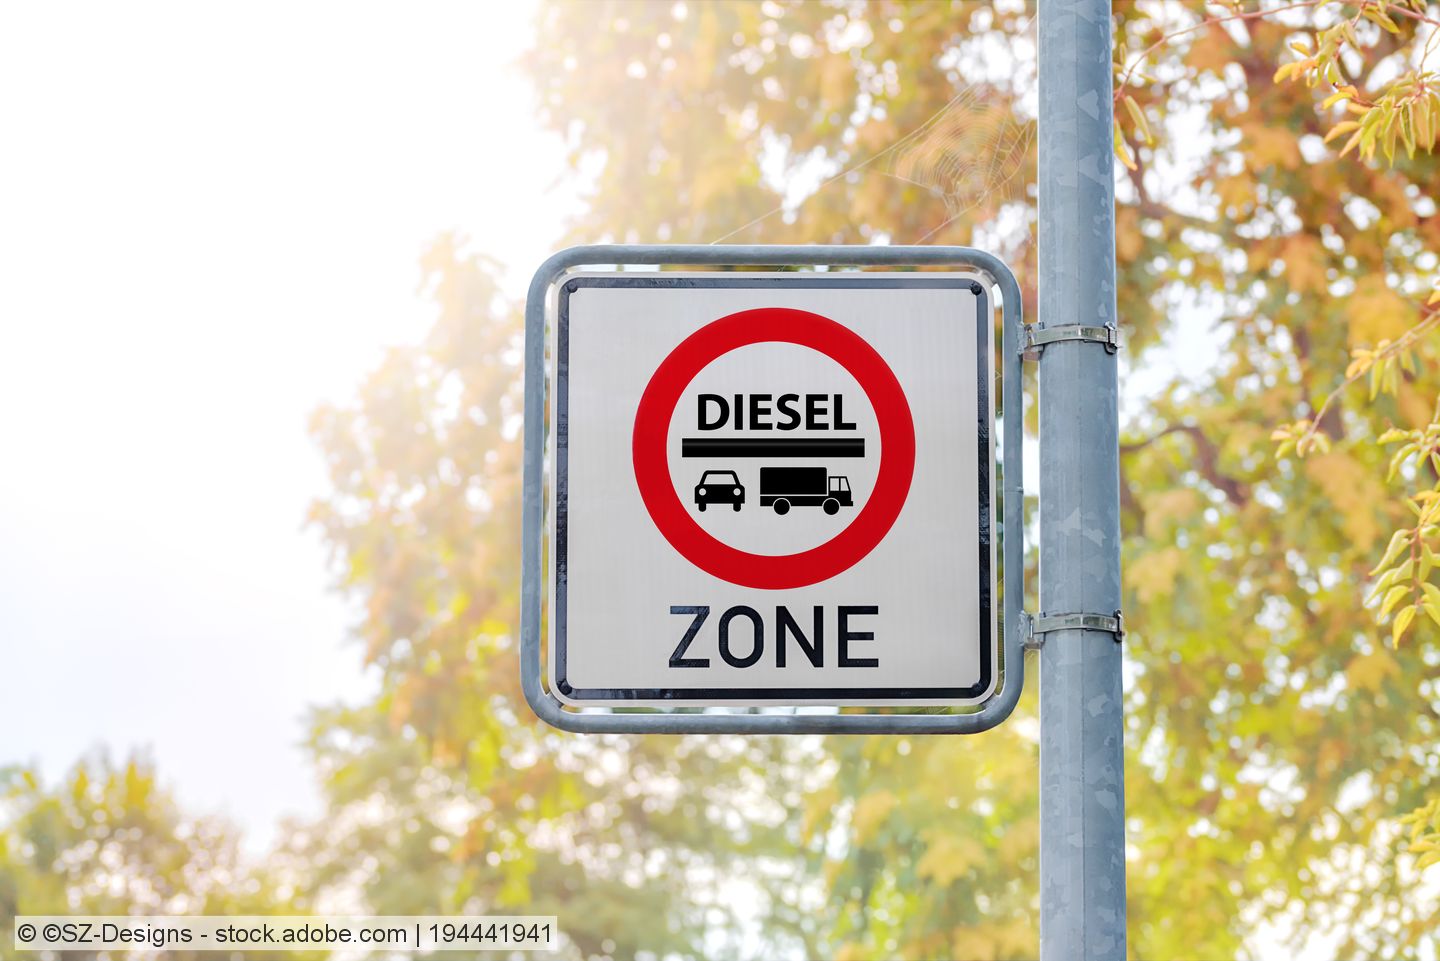 Ausnahmeregelung von Diesel-Fahrverboten für private Entsorger erweitert